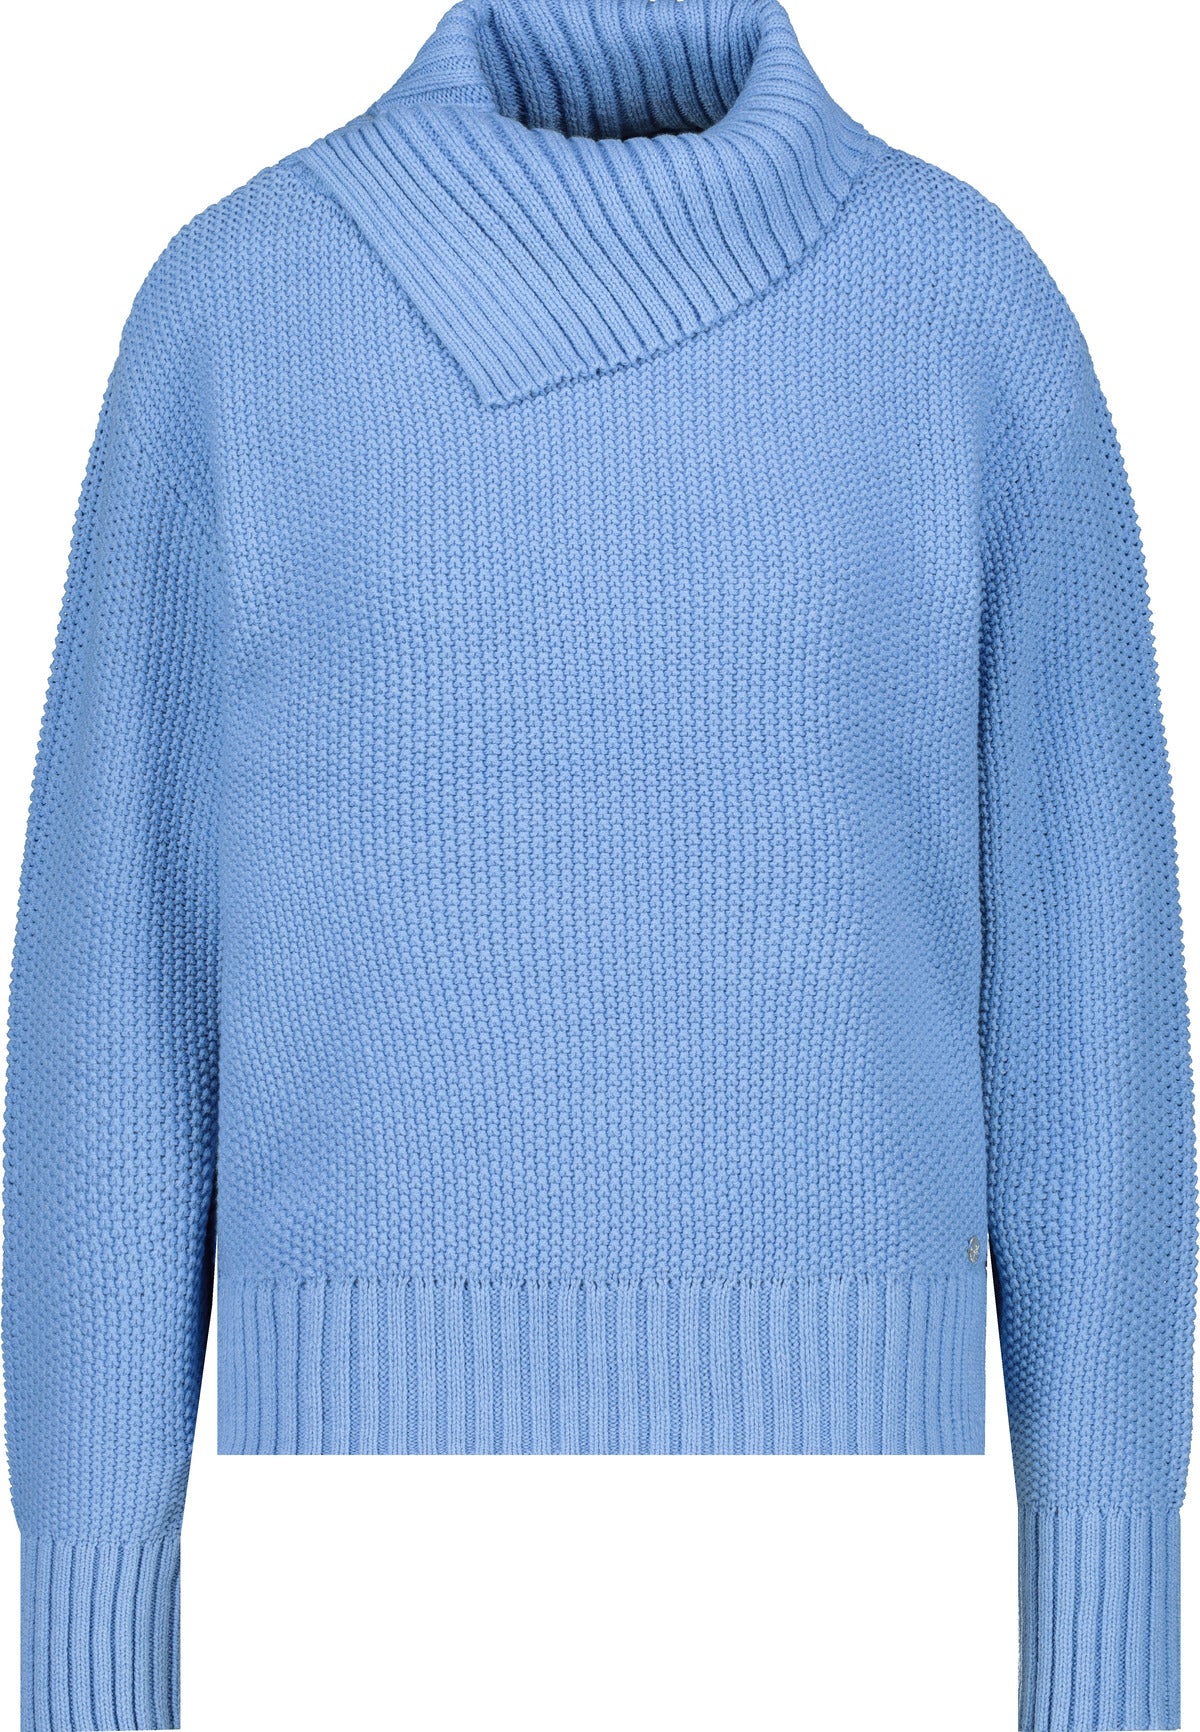 Pullover, arctic blue